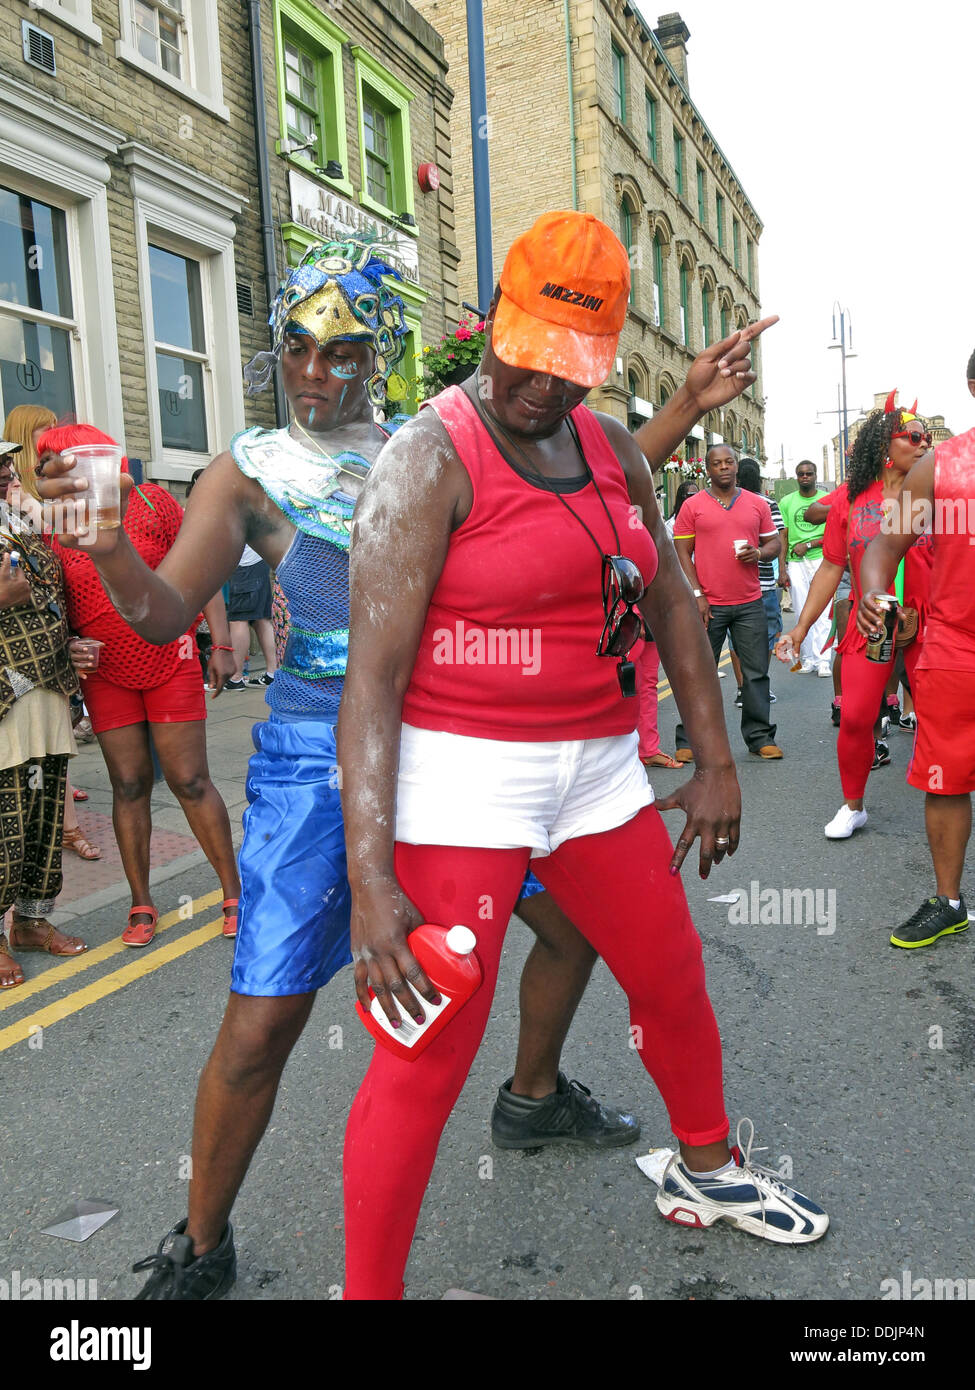 Ballerini in costume con talco da Huddersfield Carnevale 2013 Caraibi africani parade street party Foto Stock